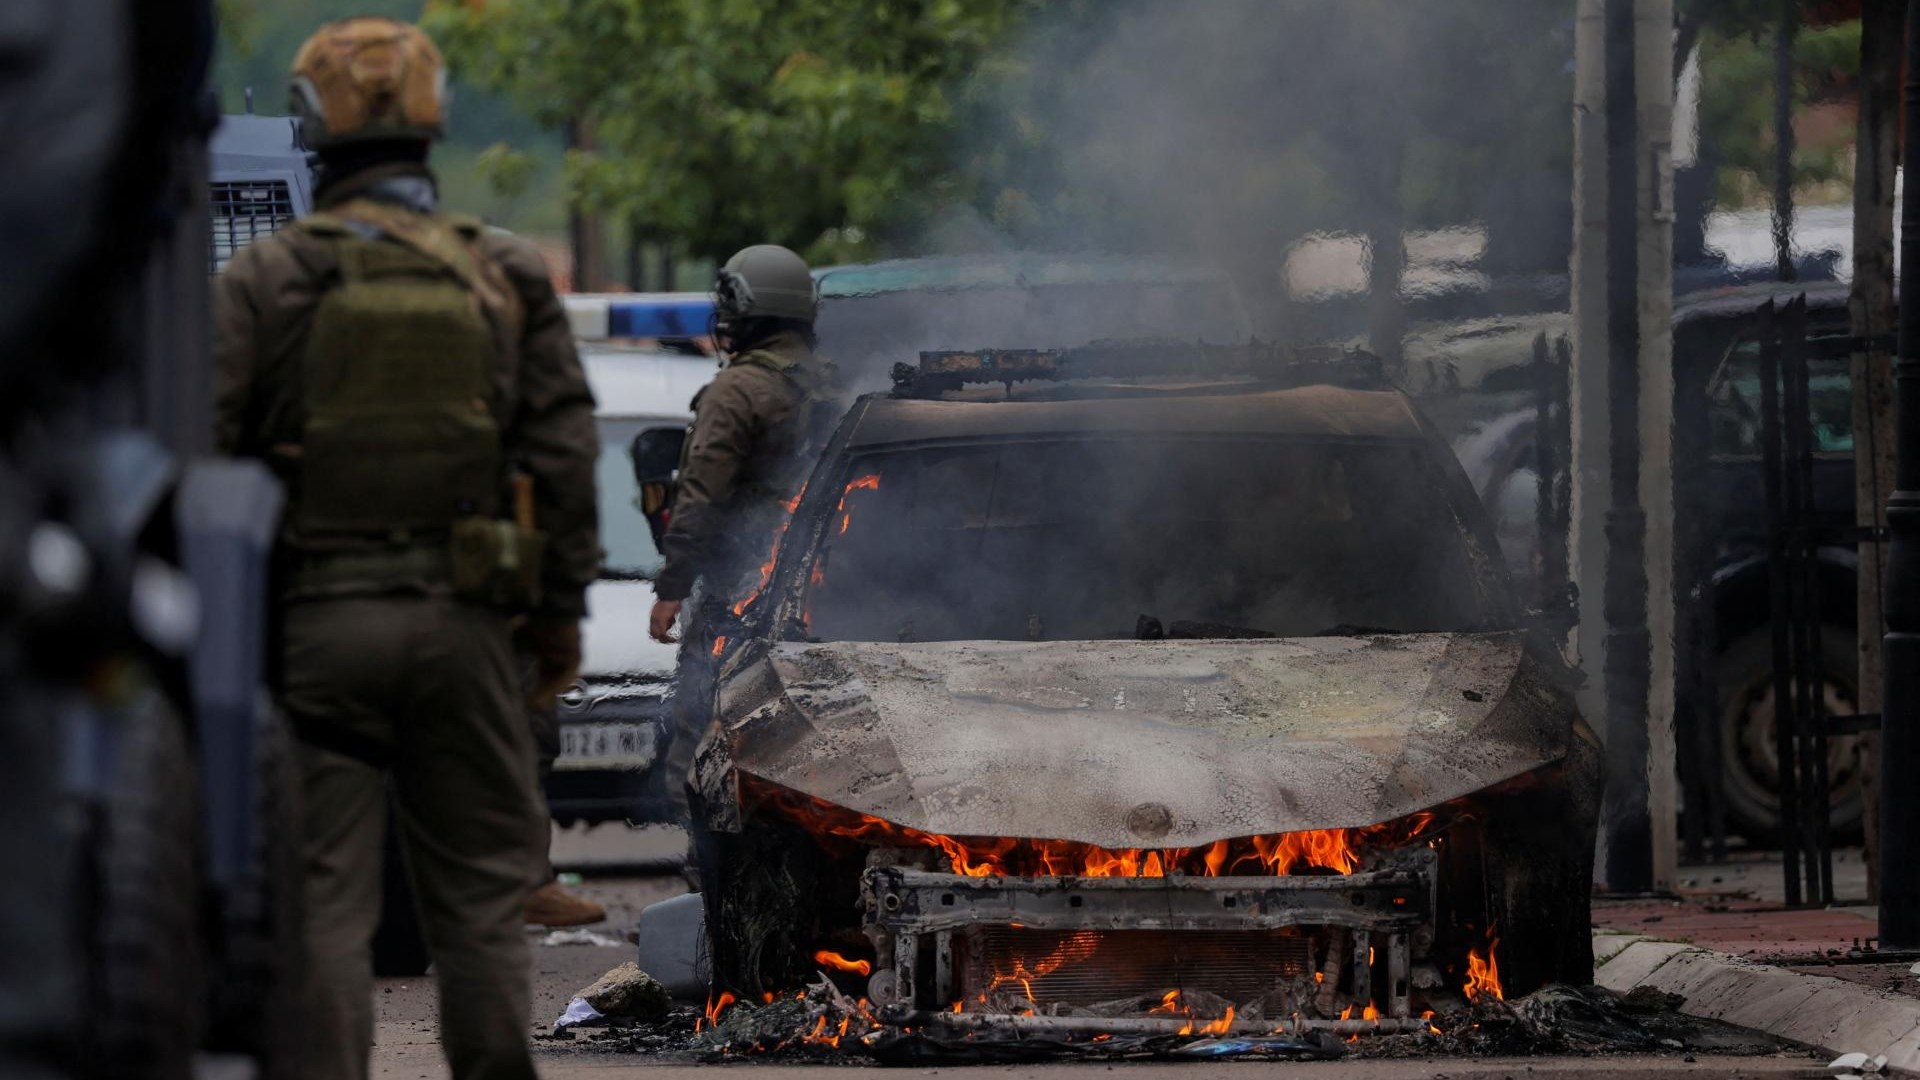 V Kosovu izbruhnil konflikt med prebivalci in policijo